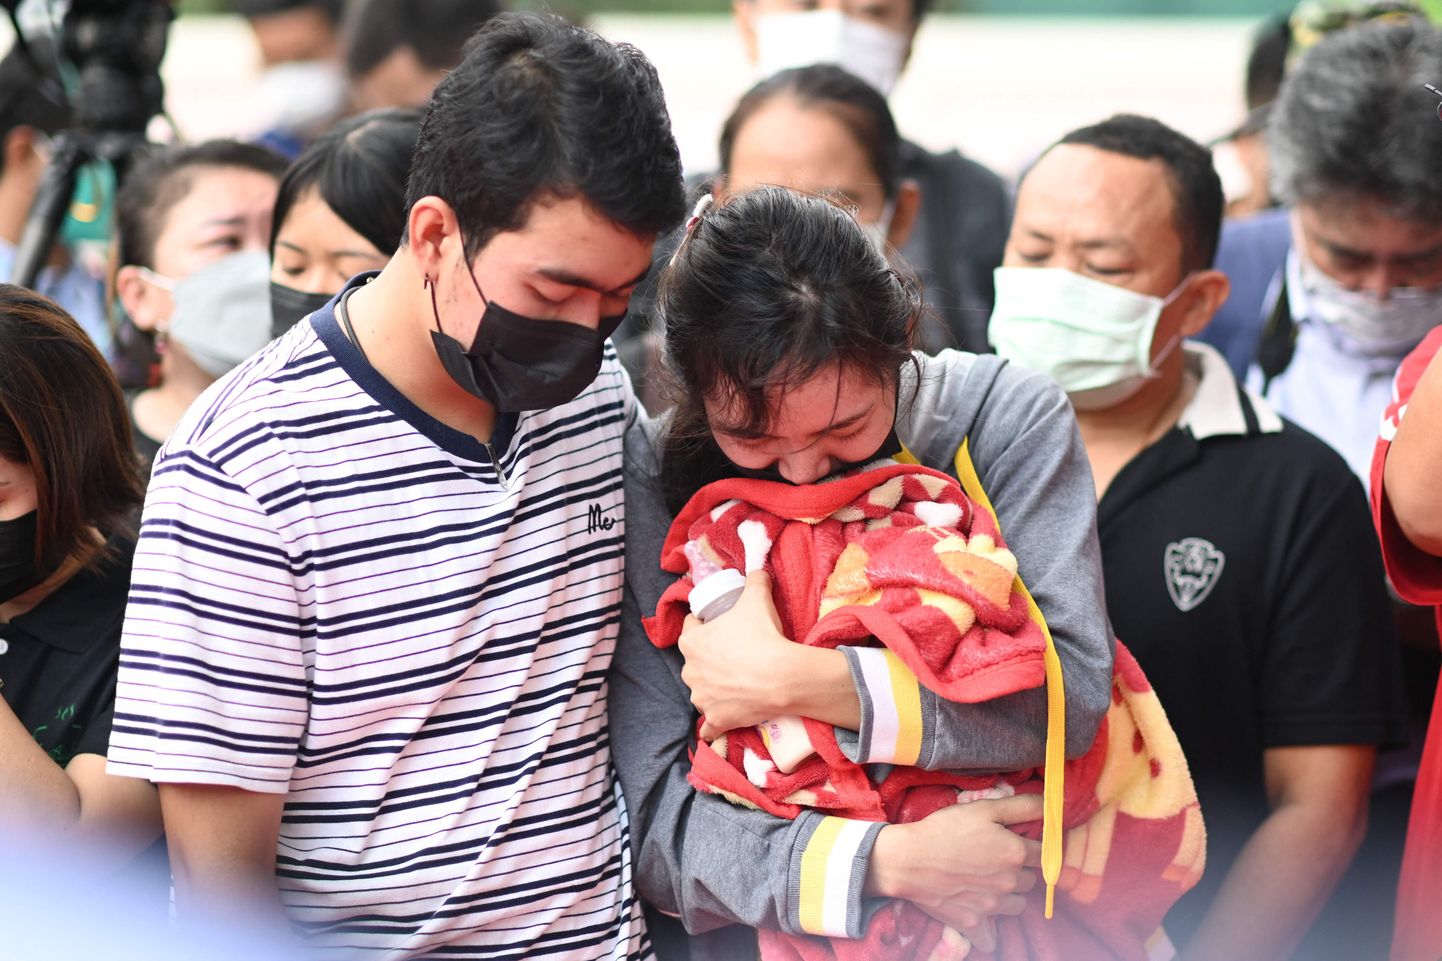 Inimesed seisavad leinas Tai lasteaia ees, kus massitulistamises hukkusid väikelapsed.